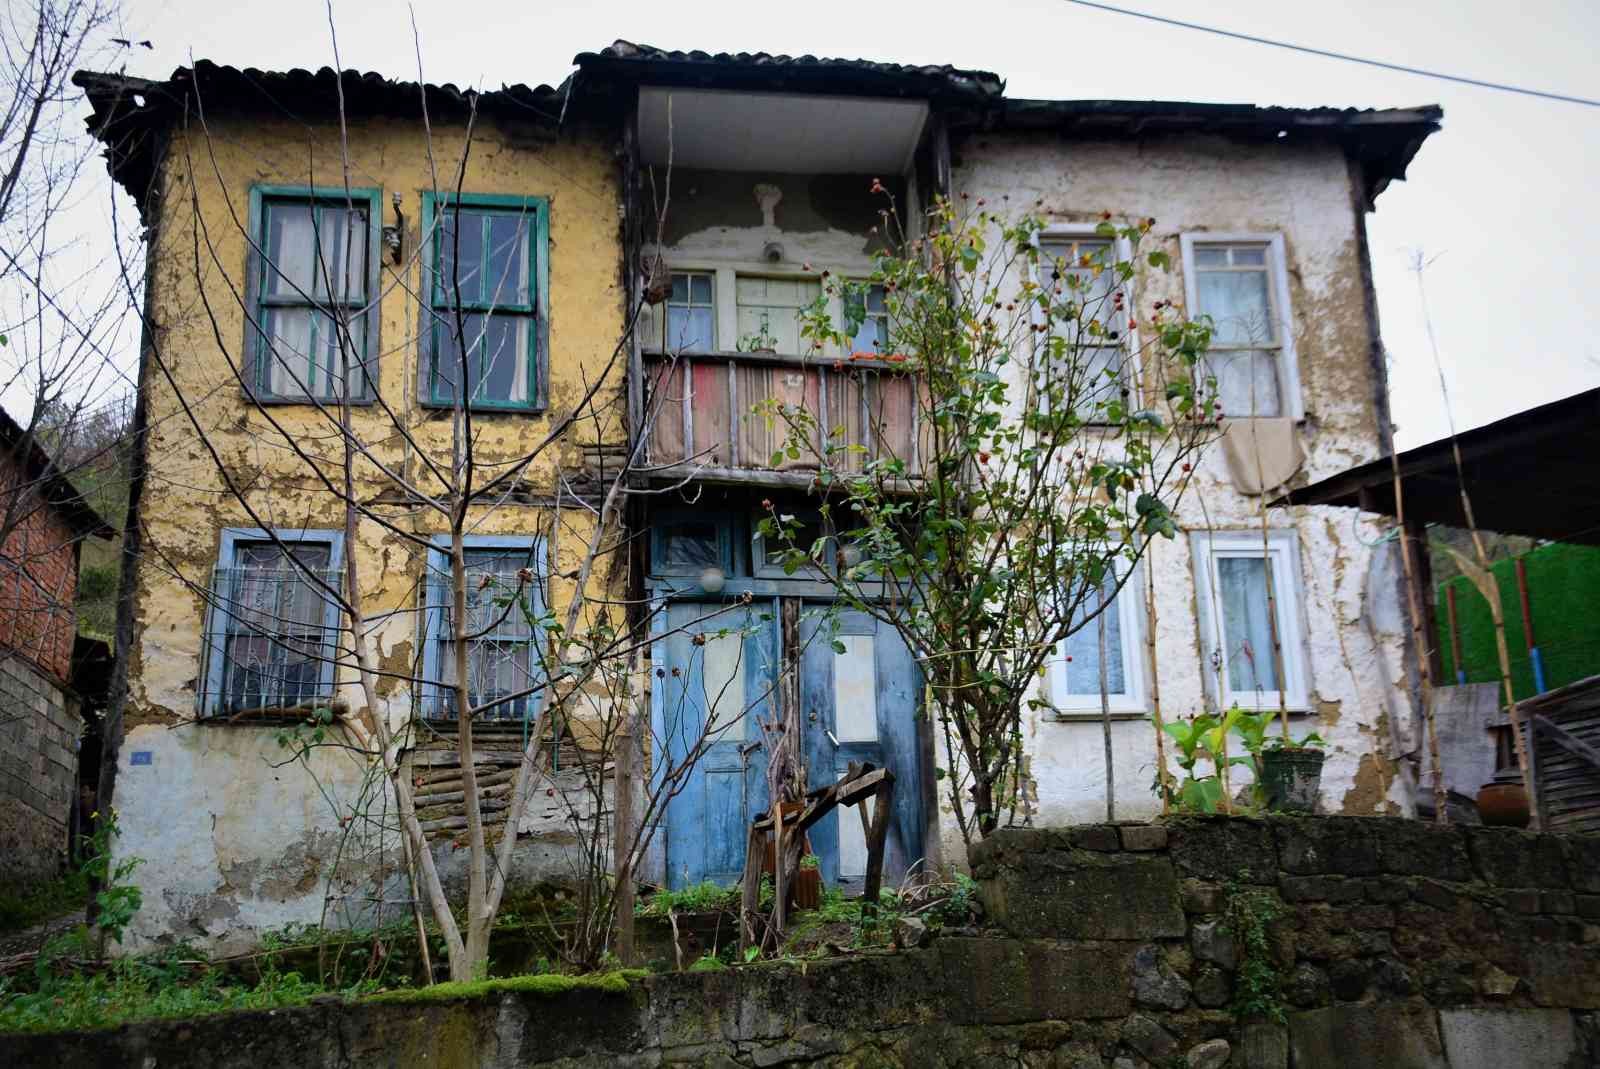 700 yıllık köyün tarihe tanıklık eden evleri #kocaeli